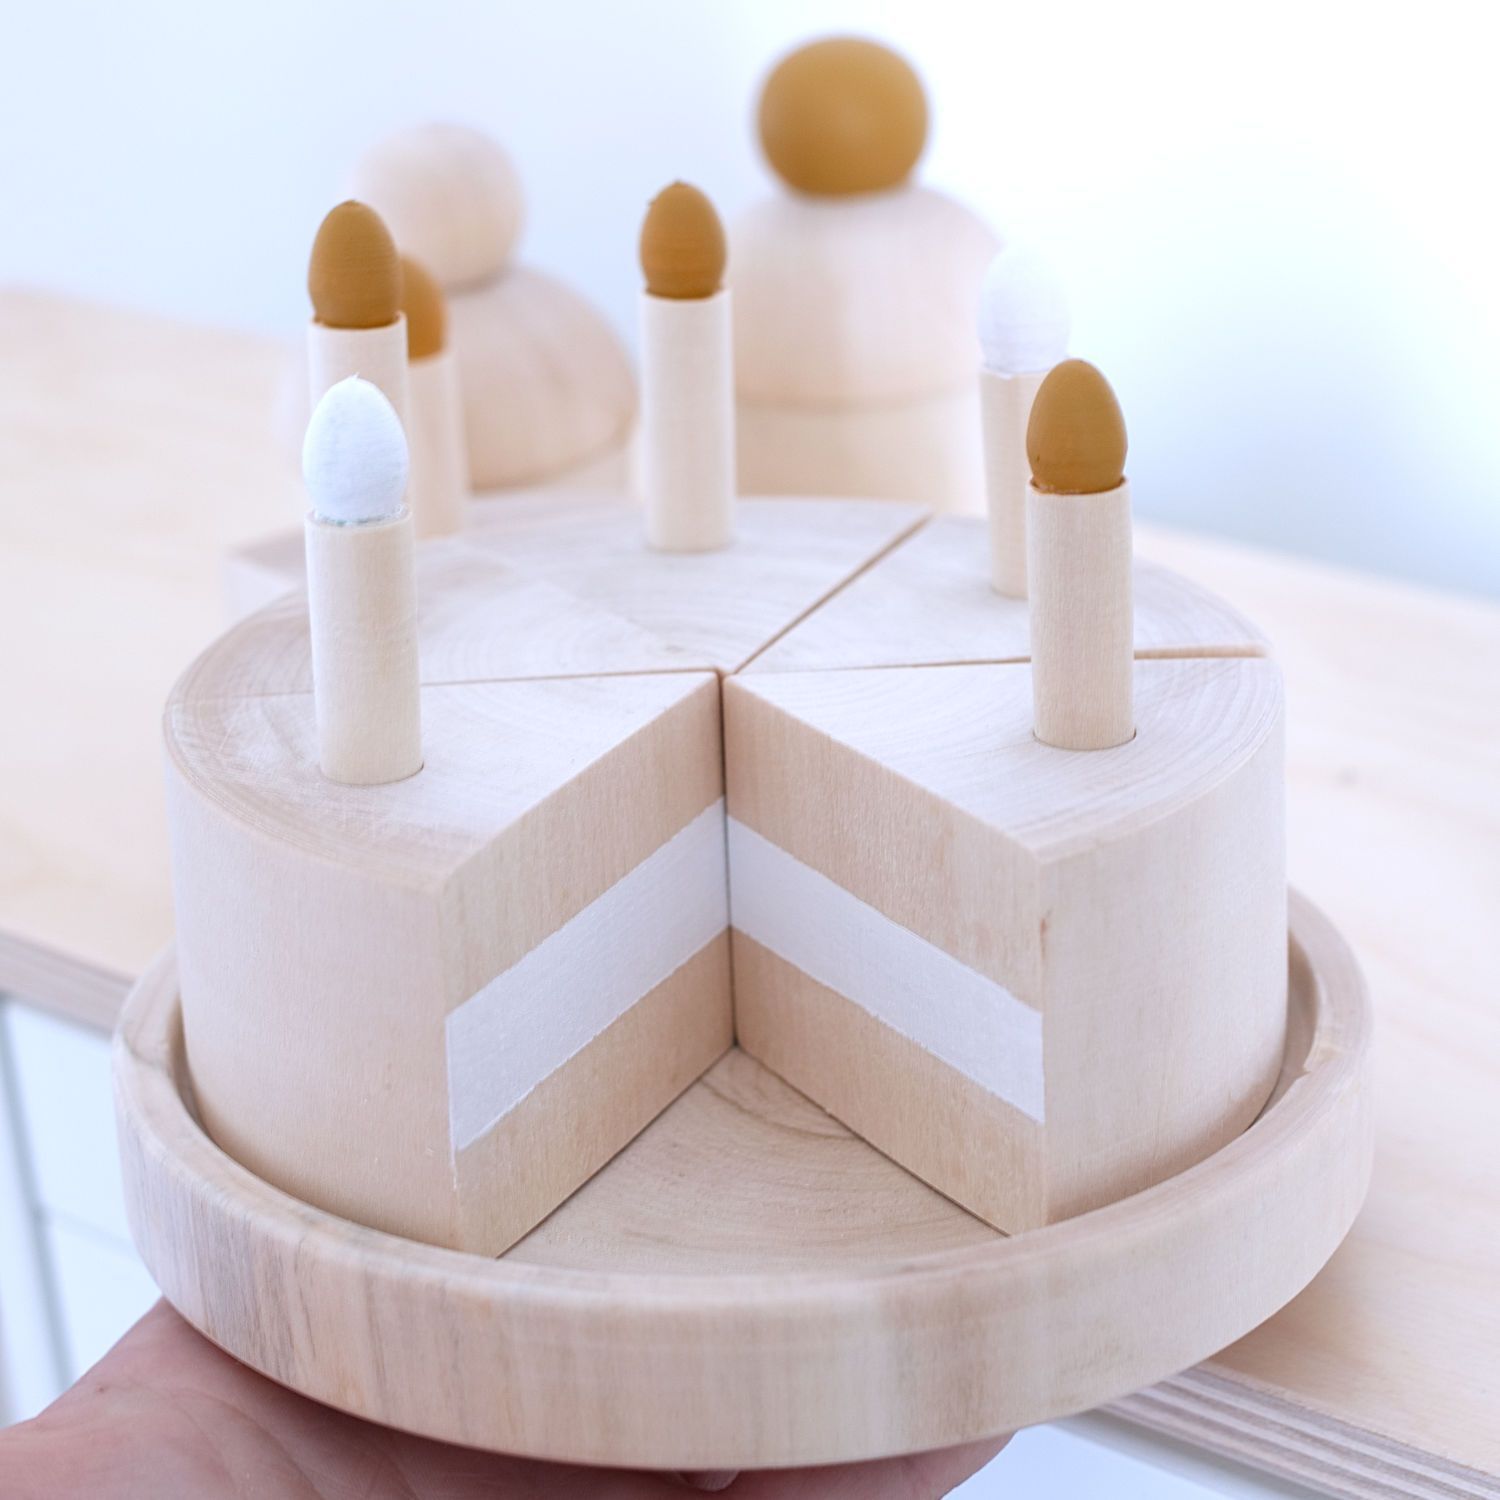  Mô hình bánh sinh nhật - Đồ chơi bằng gỗ dễ thương cho bé gái 